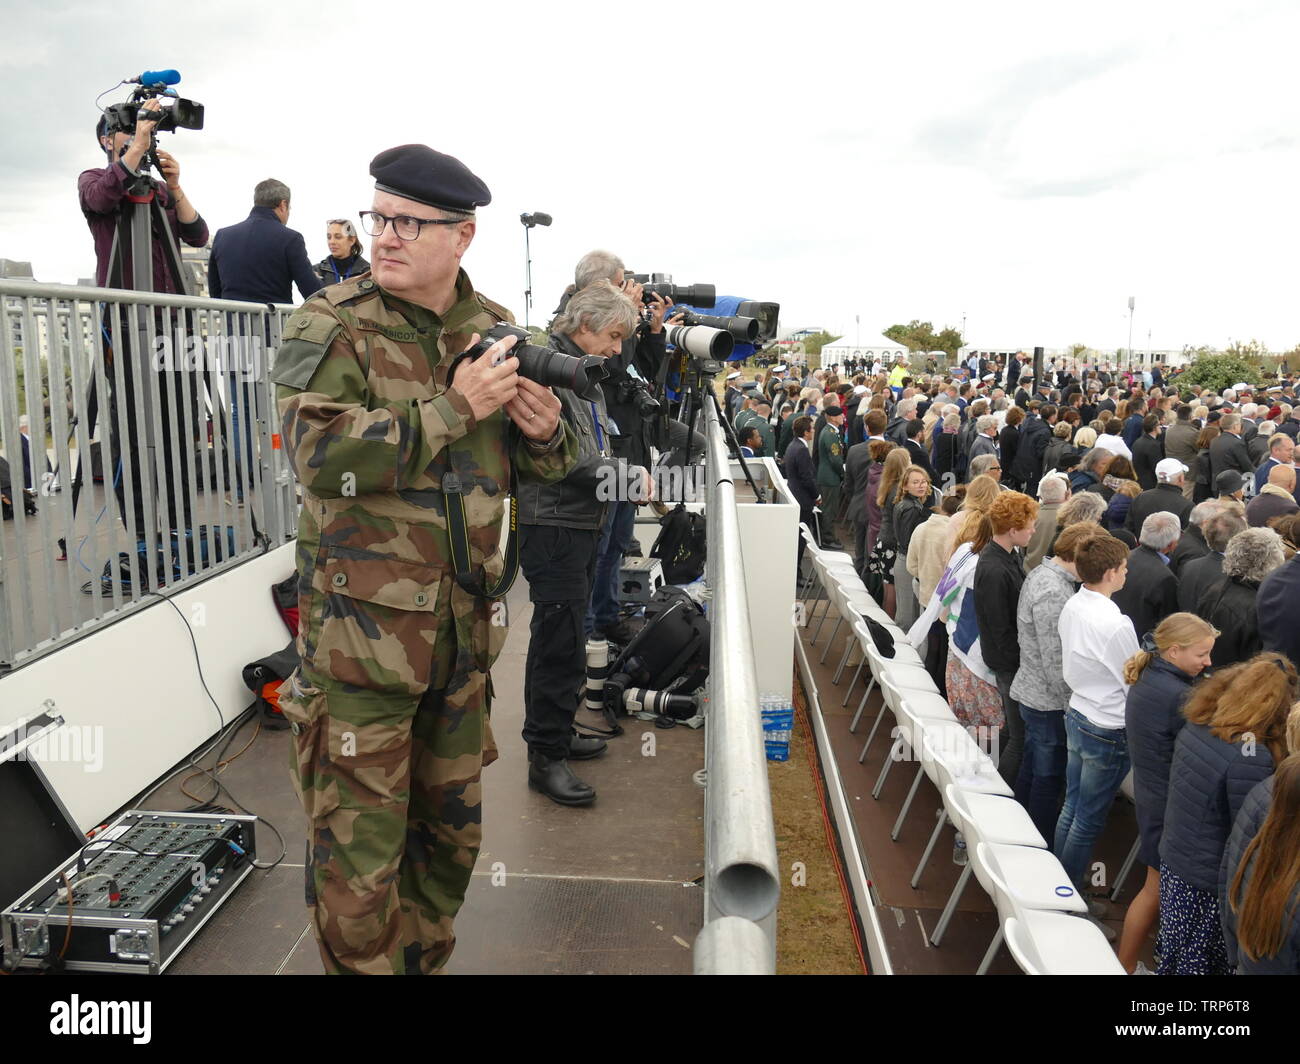 Cérémonie officielle à COURSEULLES sur mer (Calvados) du 75ème anniversaire du Débarquement des Alliés en Normandie Foto Stock